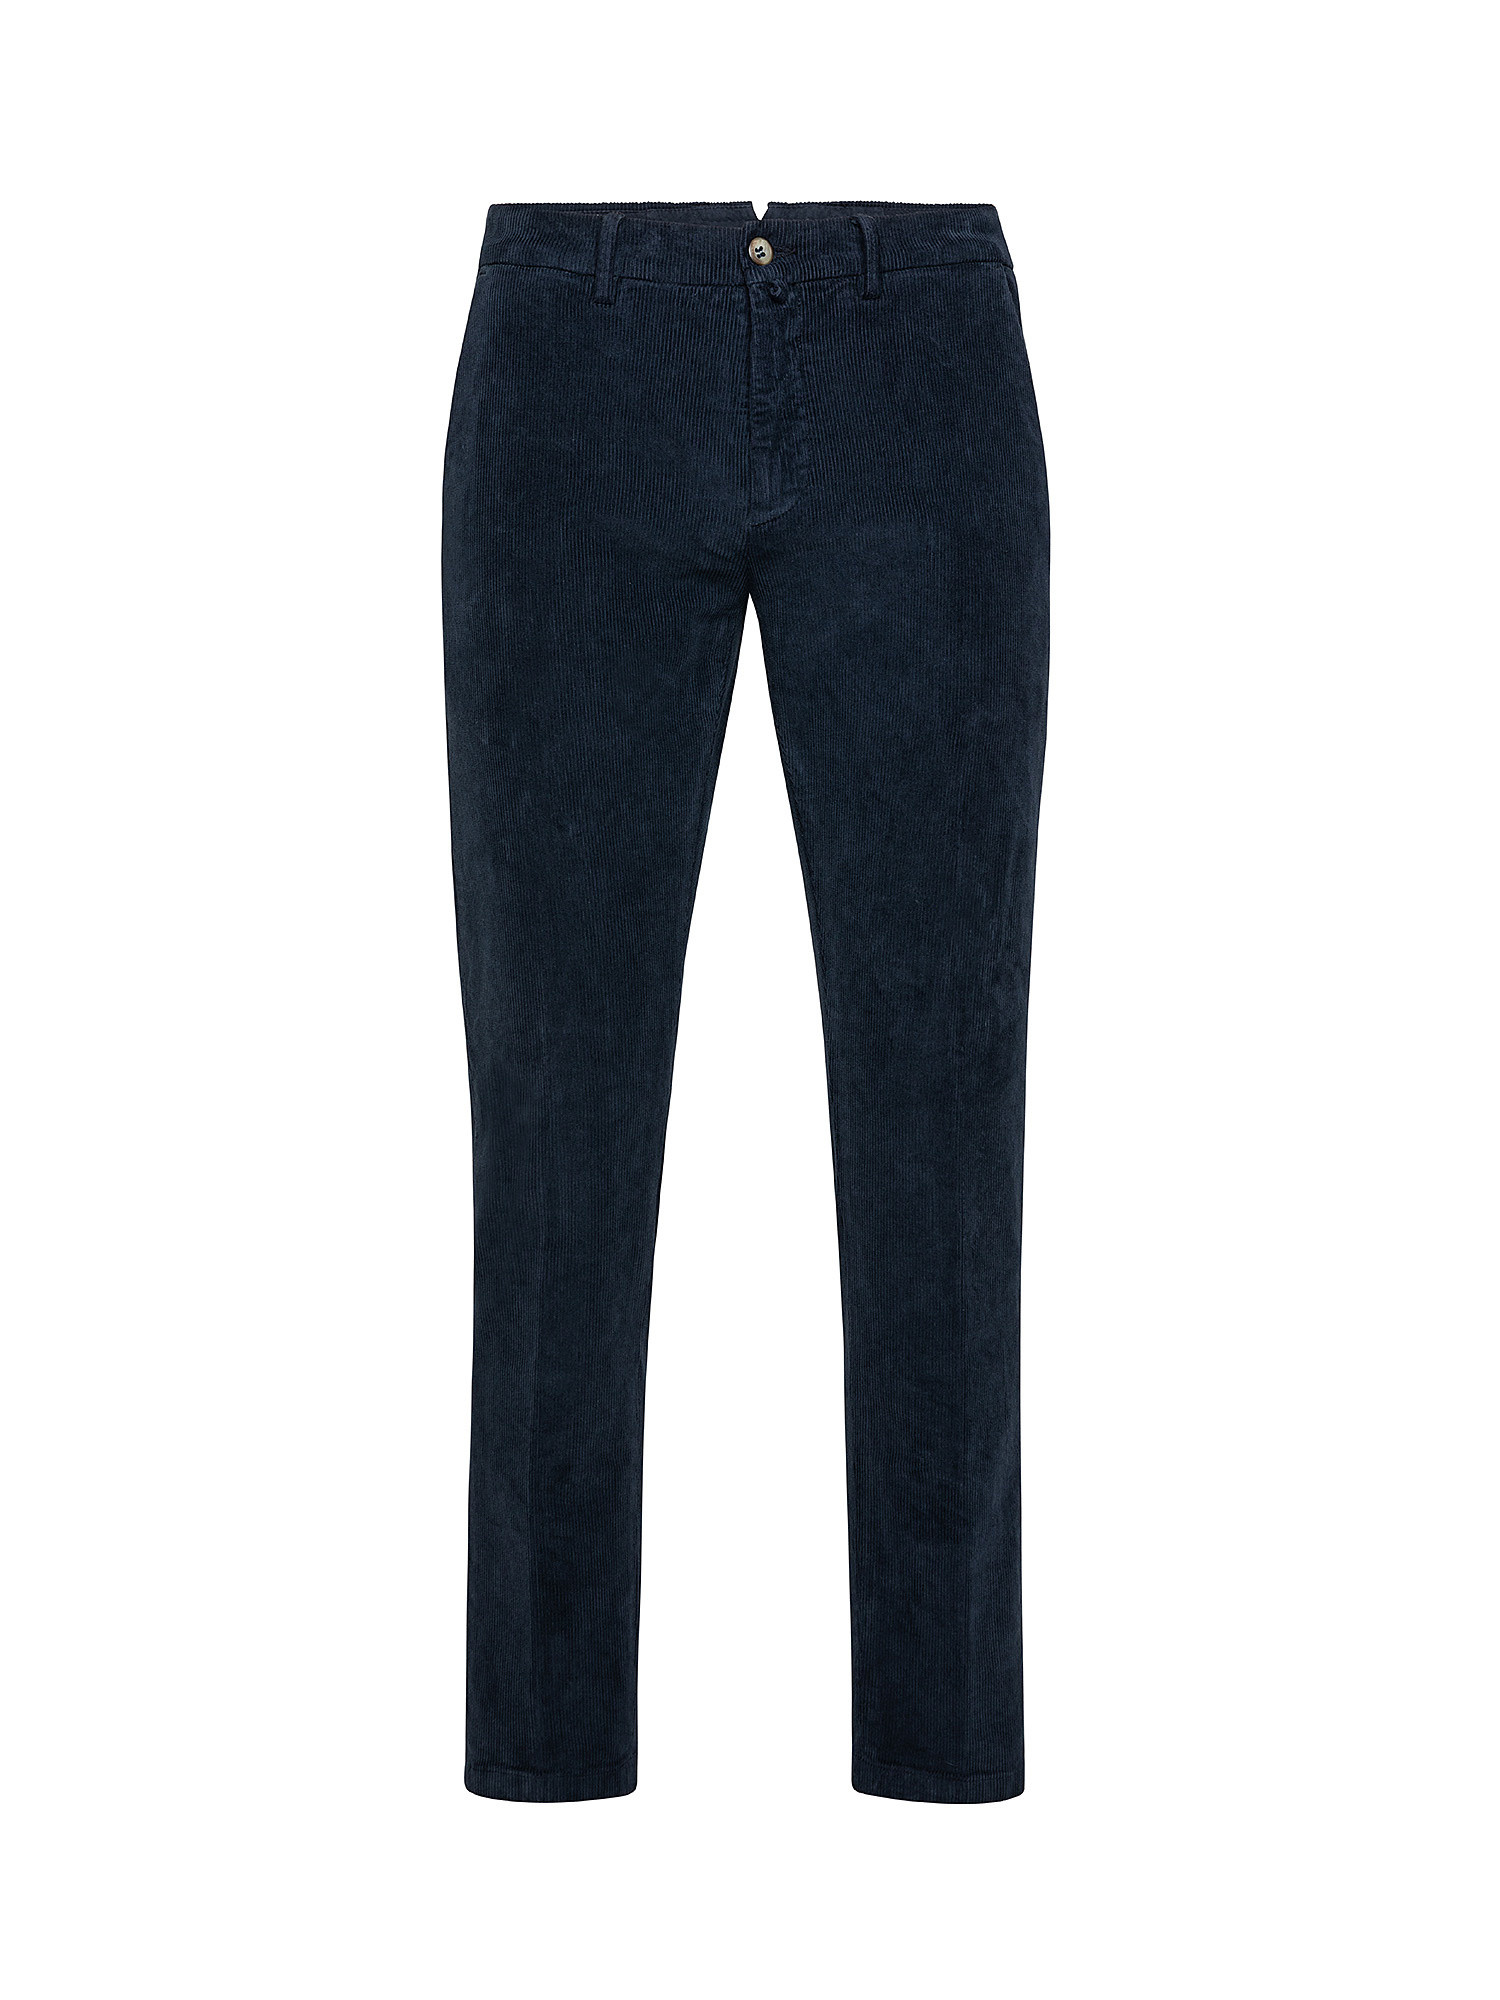 Pantaloni chino, Blu, large image number 0